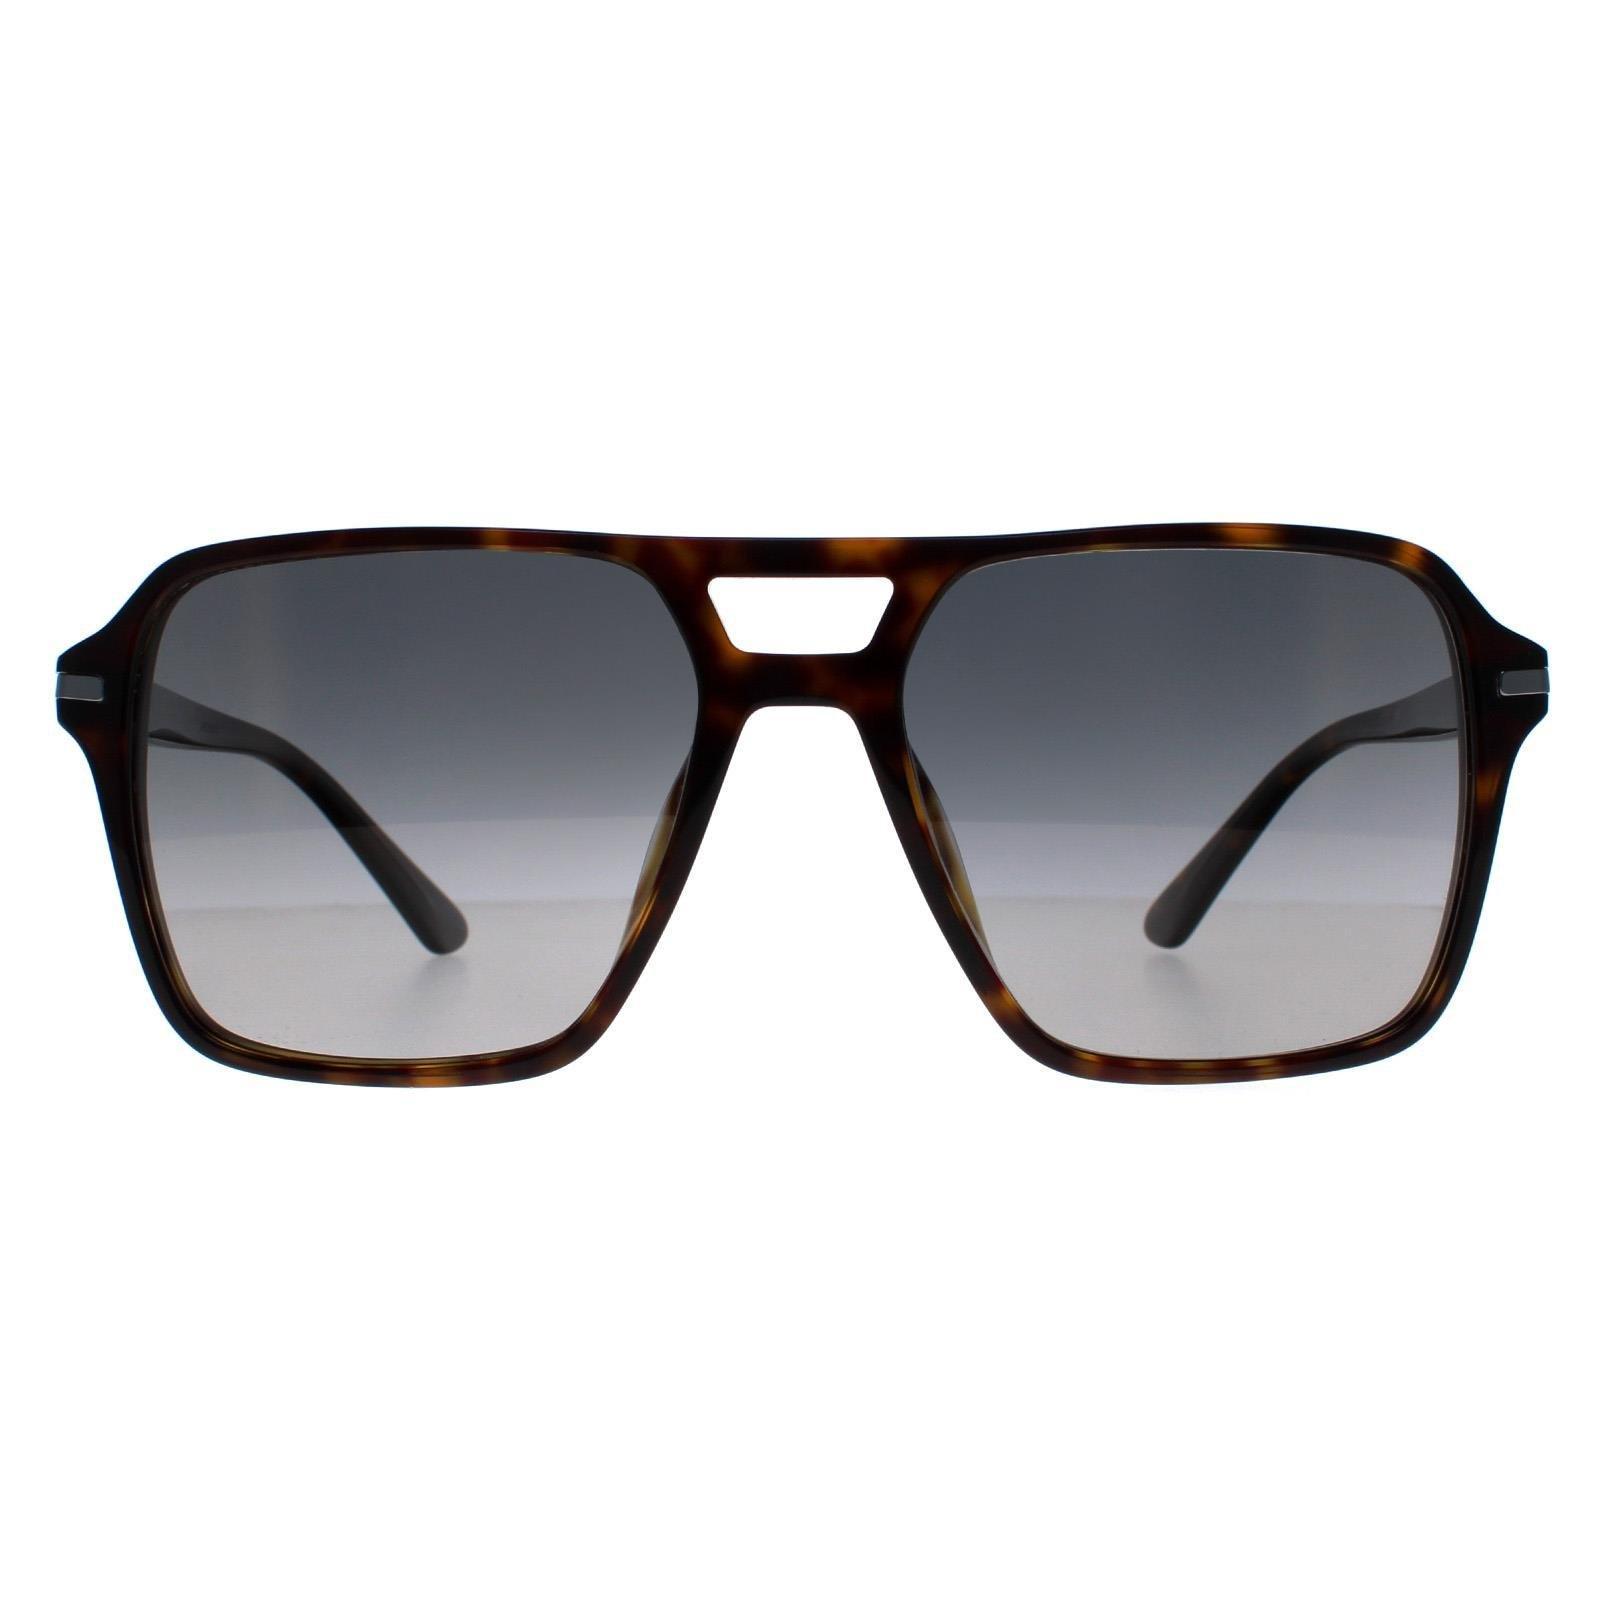 Aviator Dark Havana Grey градиент поляризованный PR20YS Prada, коричневый солнцезащитные очки mark o day corsica dark havana